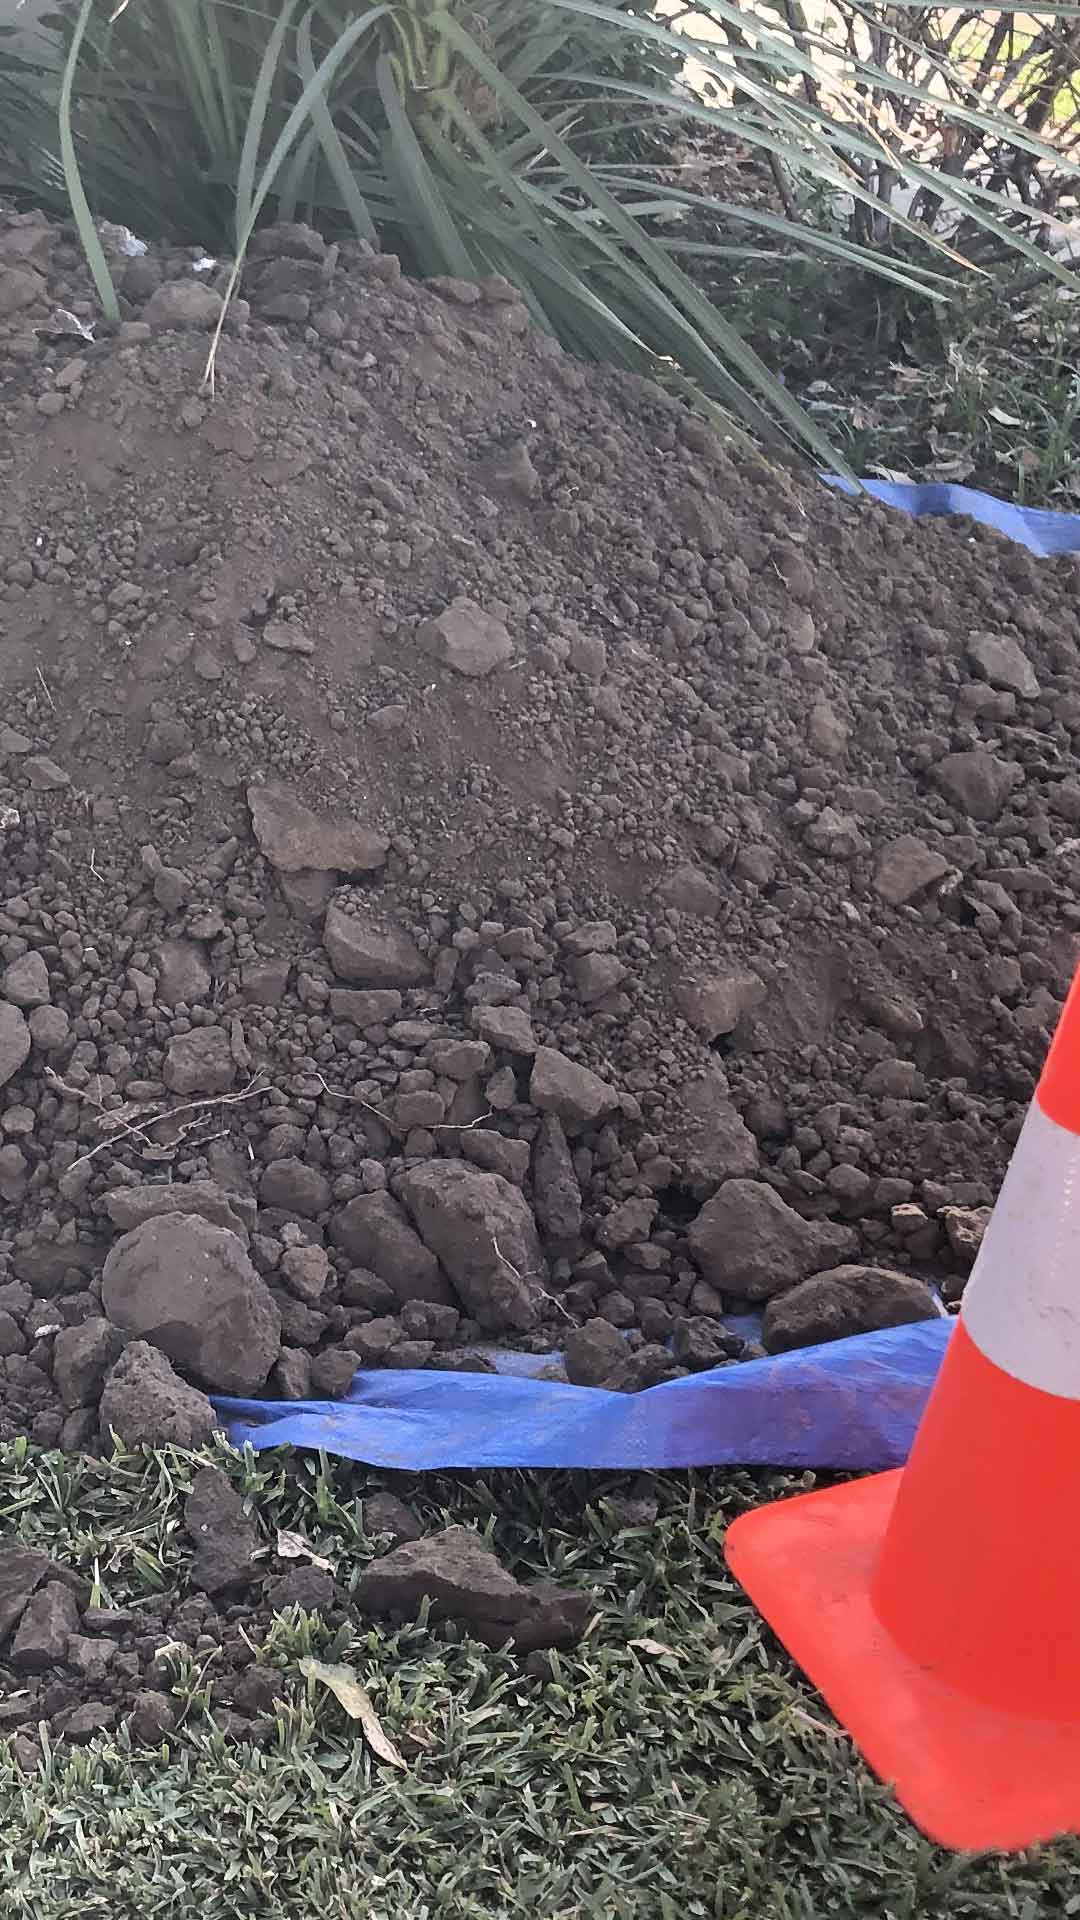 Pile of Dirt